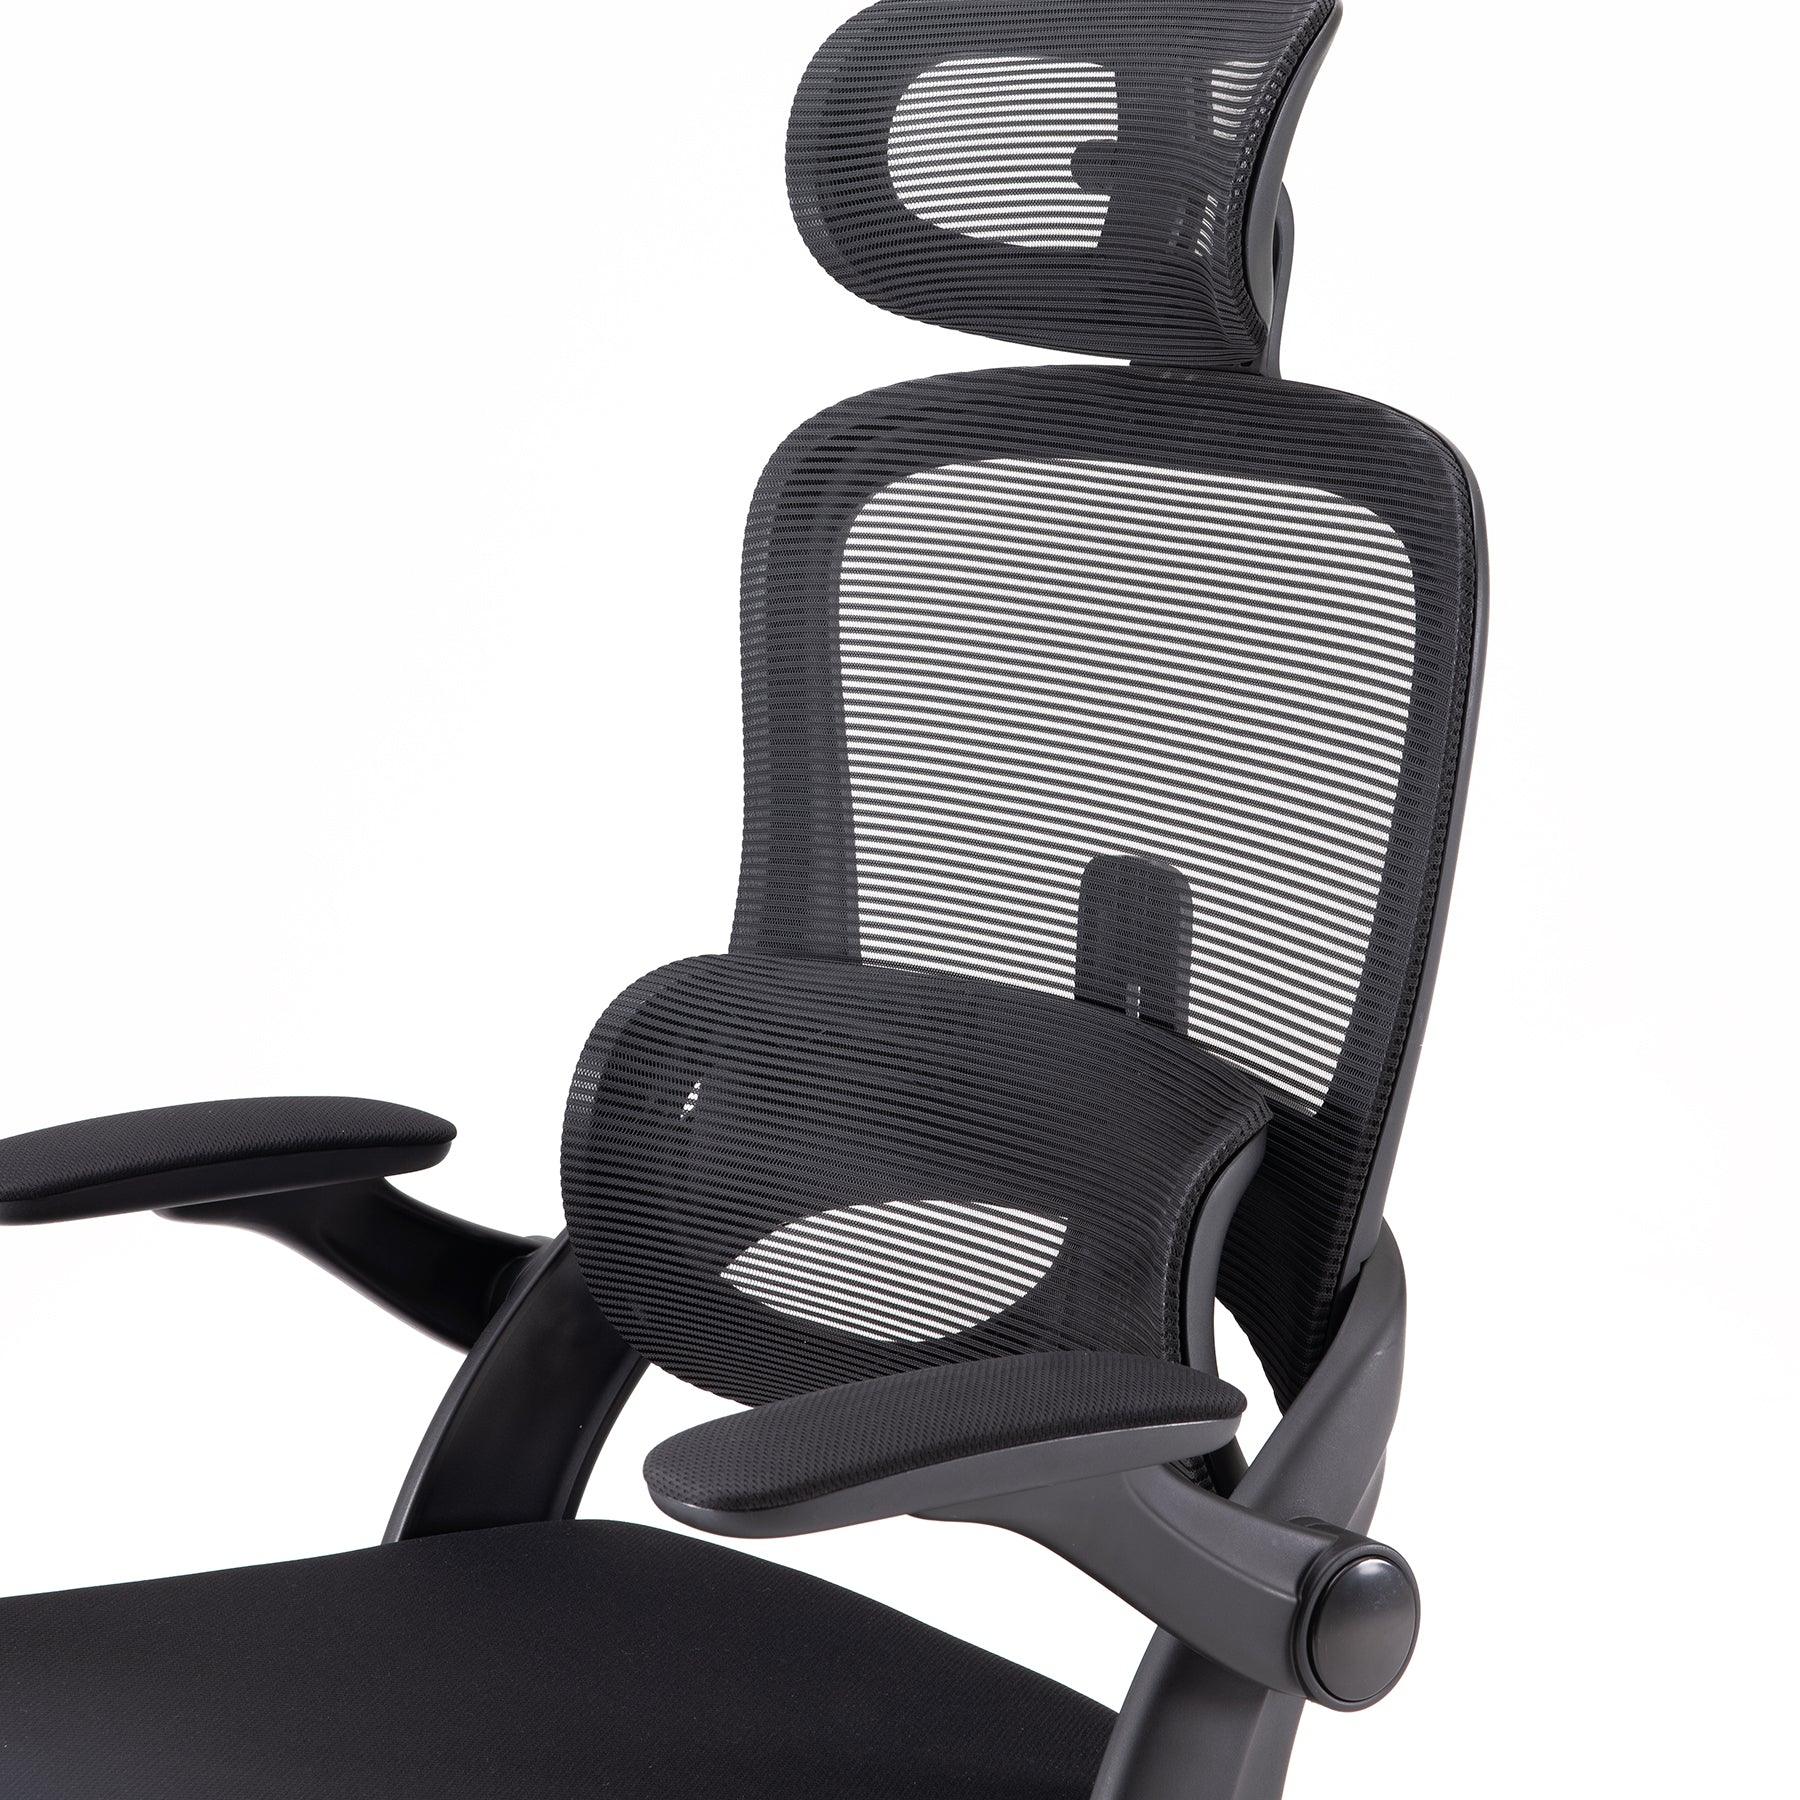 Sihoo V1 Ergonomic Office Chair Review